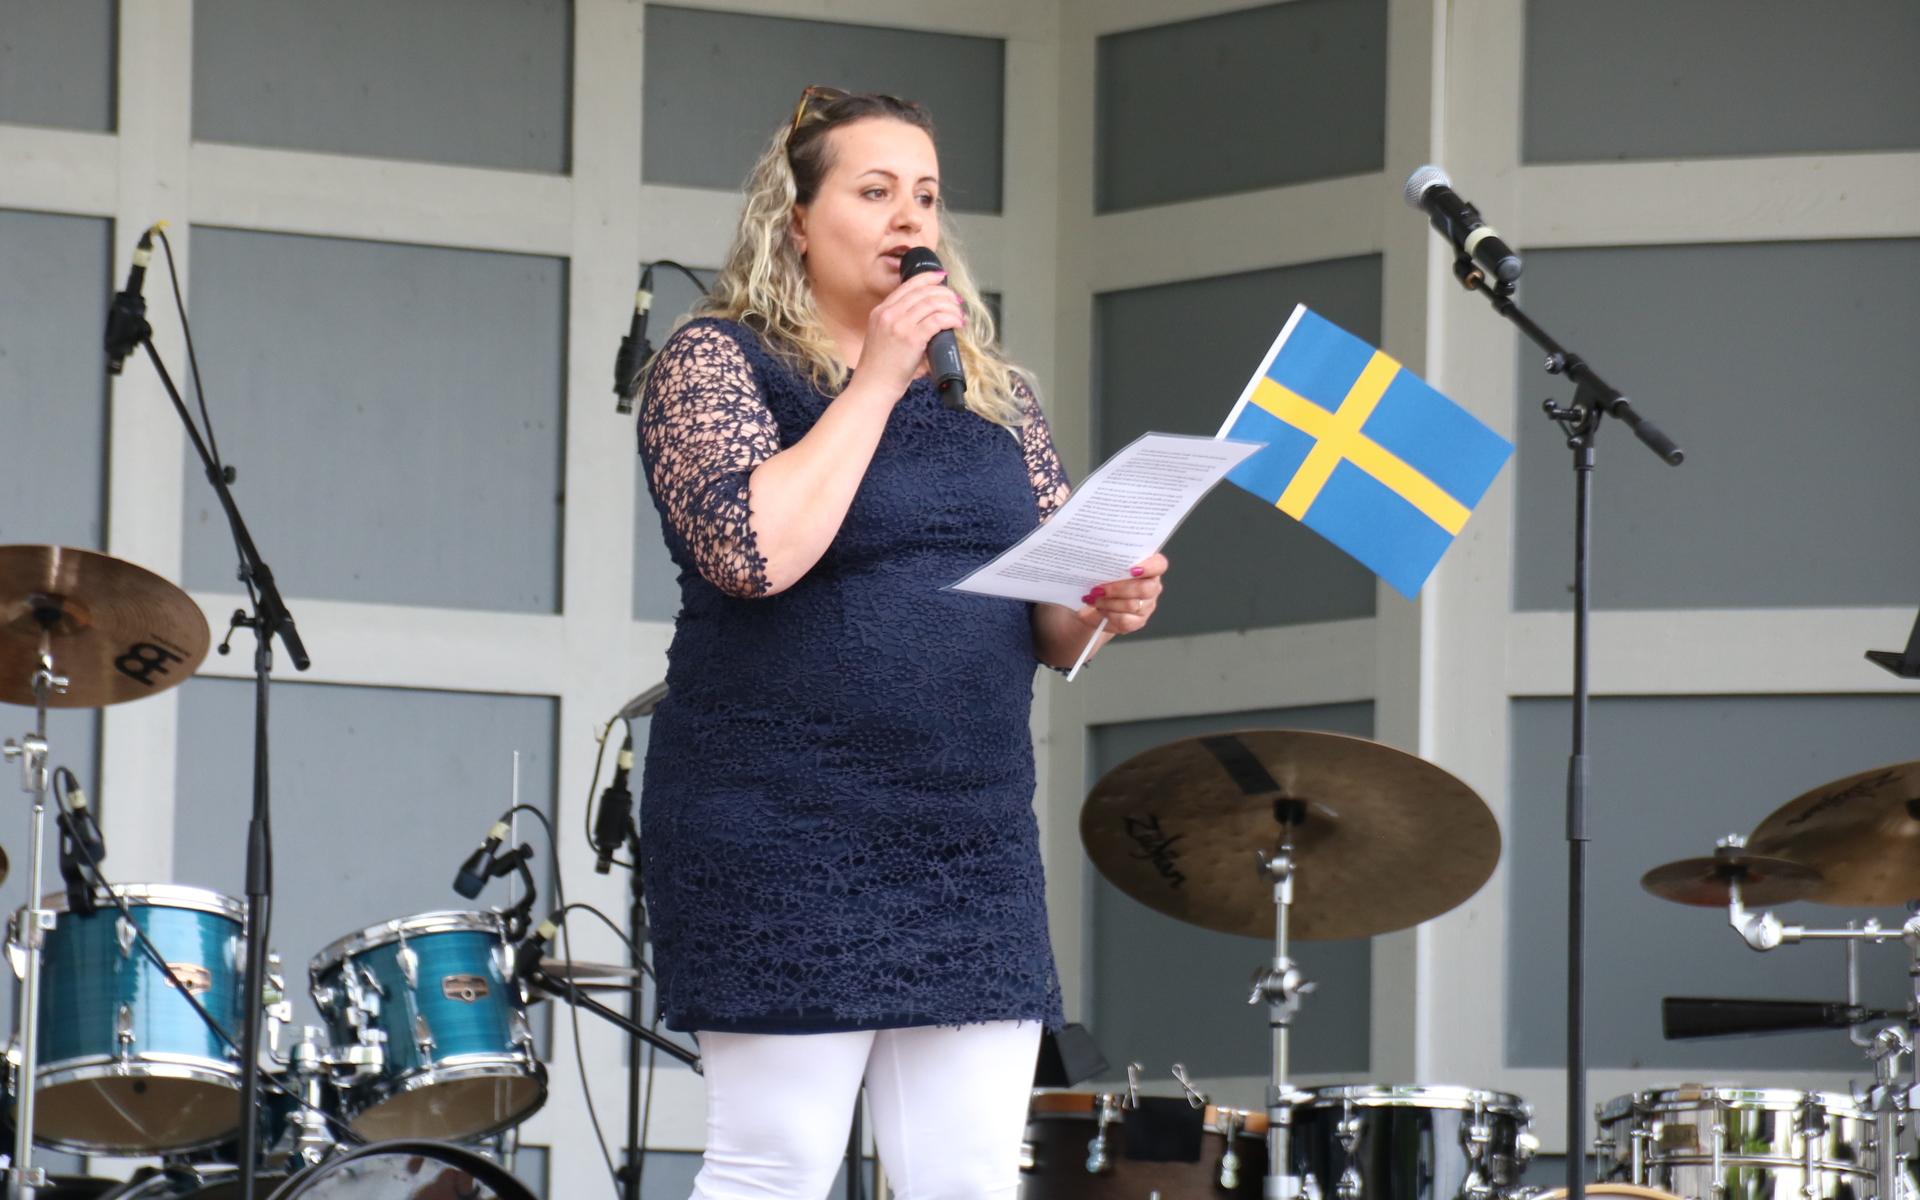 Nazeera Oudesho från Syrien höll ett gripande högtidstal om betydelsen av att bli välkomnad i ett nytt land. Hon passade också på att tacka för all hjälp och stöttning hon fått i sitt nya hemland Sverige.